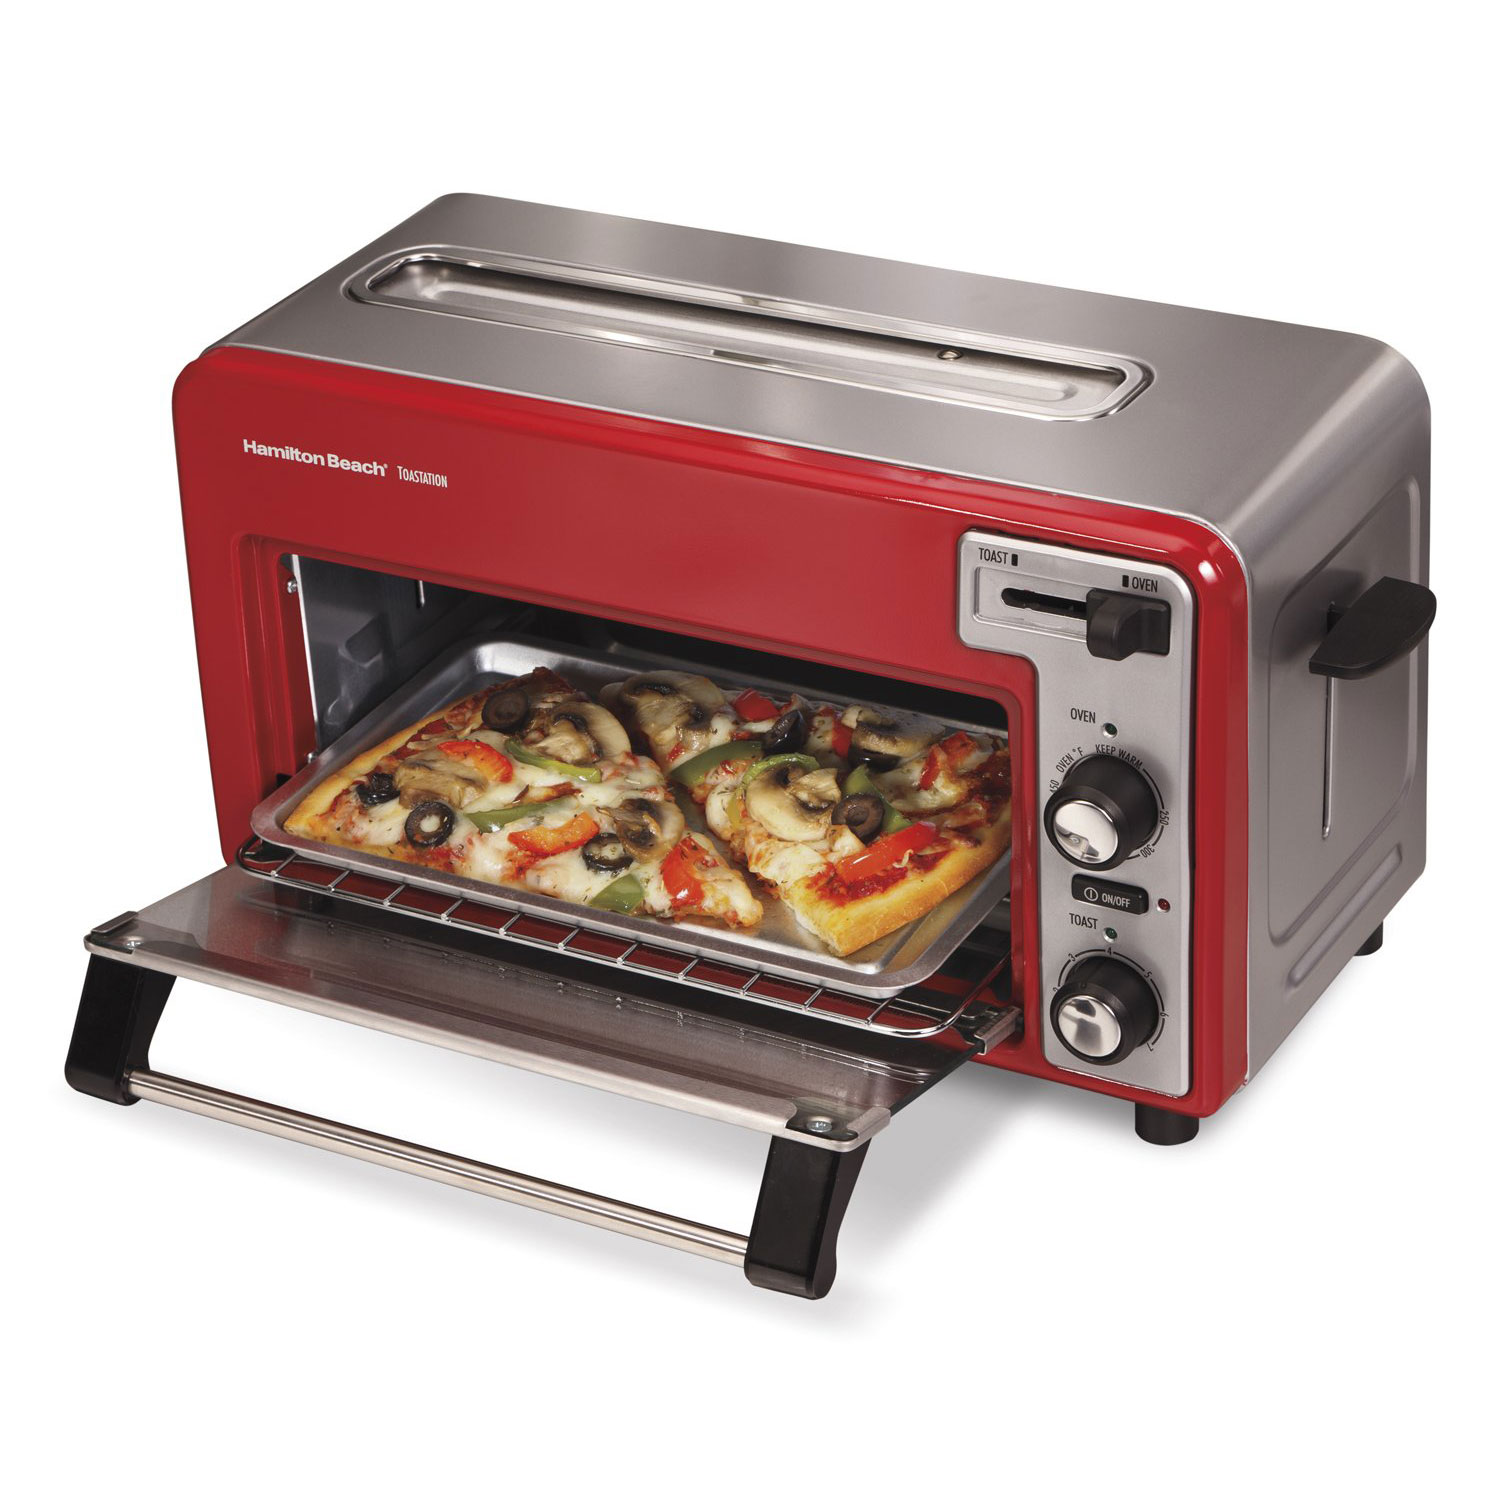 Купить гриль духовку электрический. Мини печь Toaster Oven. Тостер ростер Тефаль. Hamilton Beach Toastation Oven with 2-Slice Toaster. Тостер Concord CD-278 Toaster Oven.